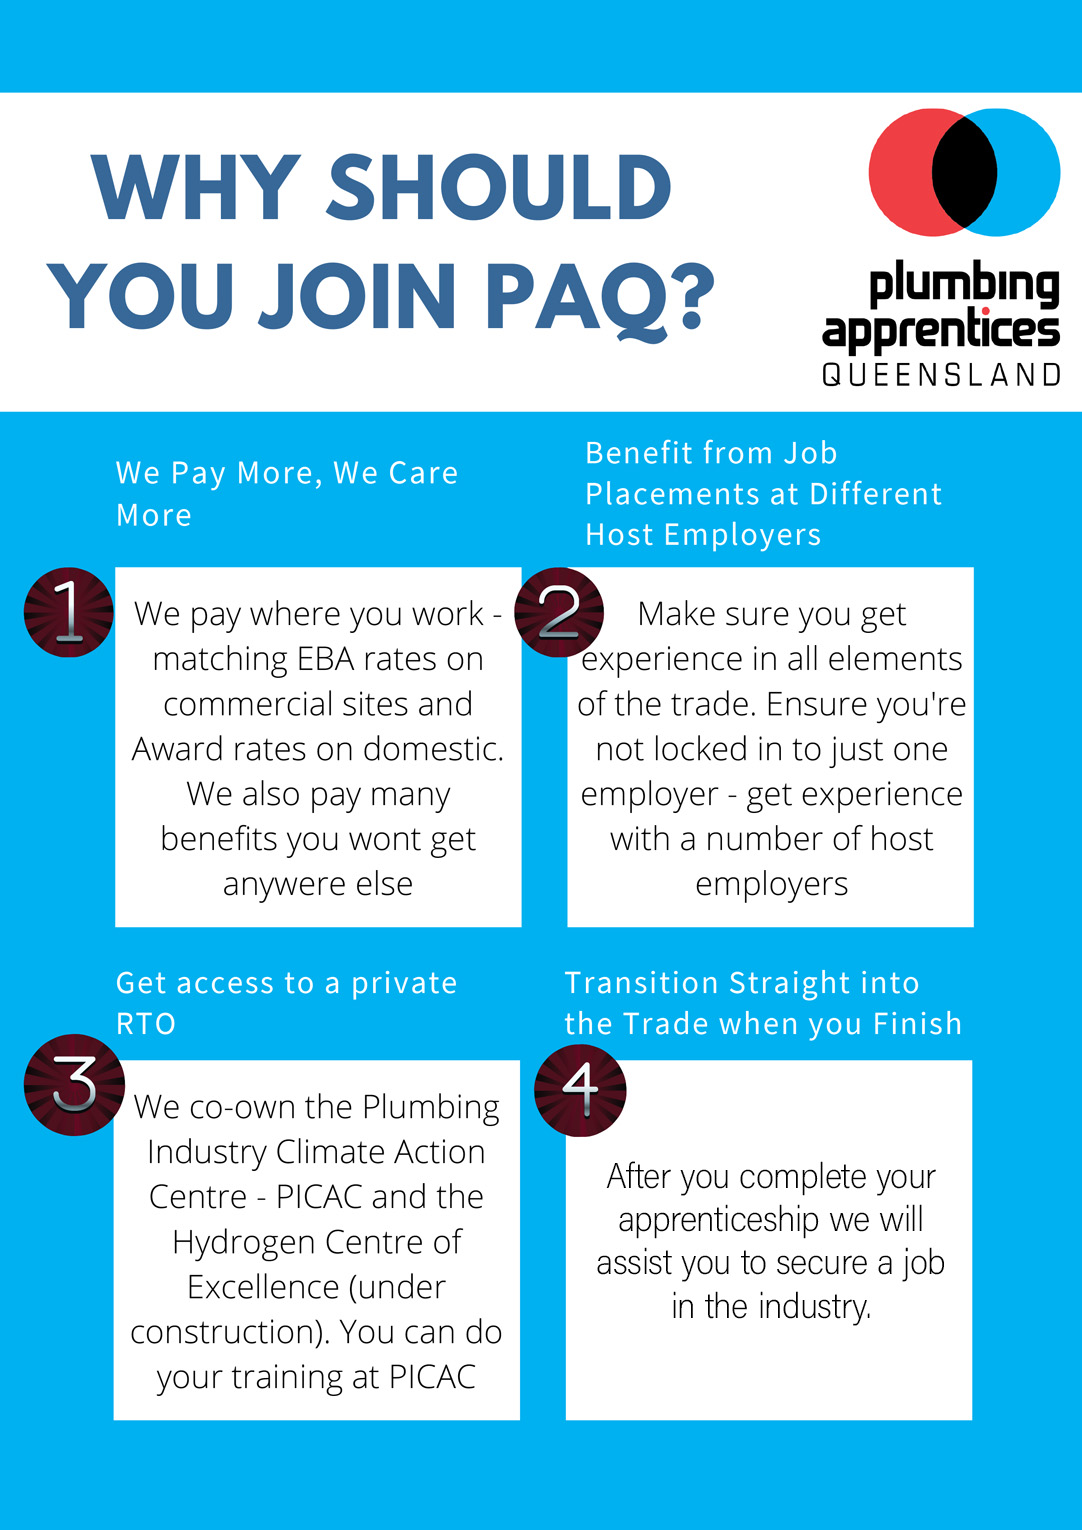 Reasons to join Plumbing Apprenticeships Queensland